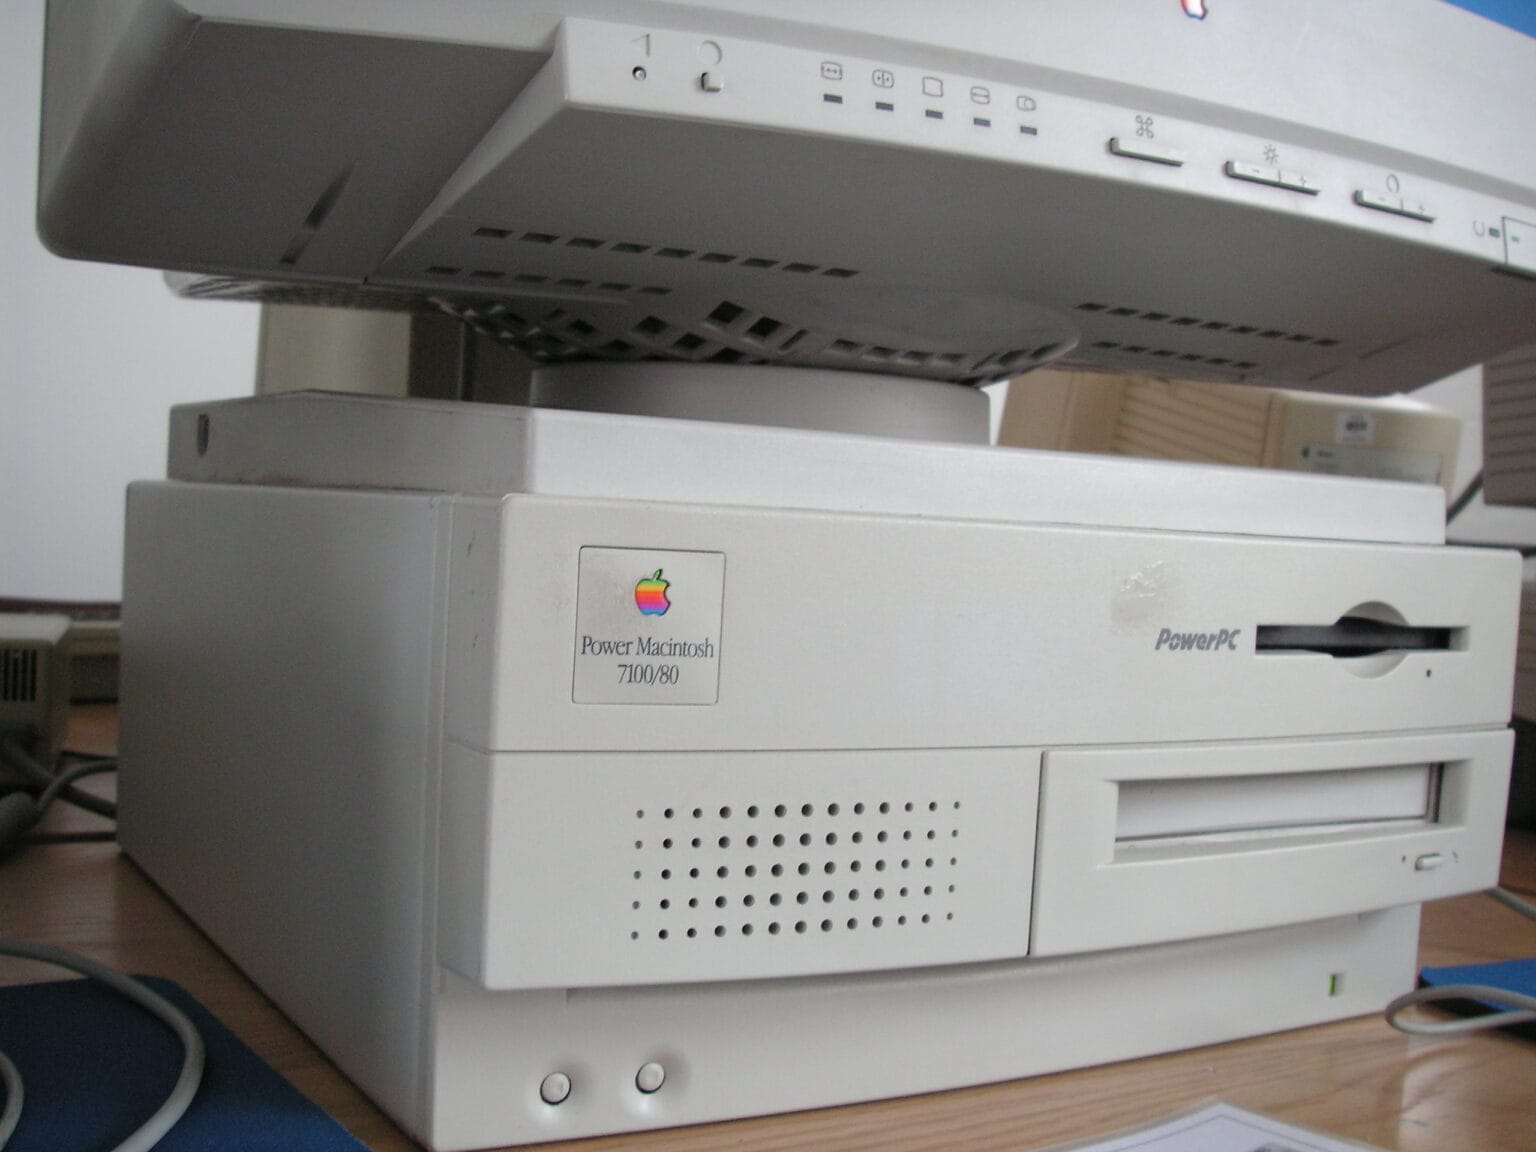 Power Macintosh 7100/80 sitting on a desk.